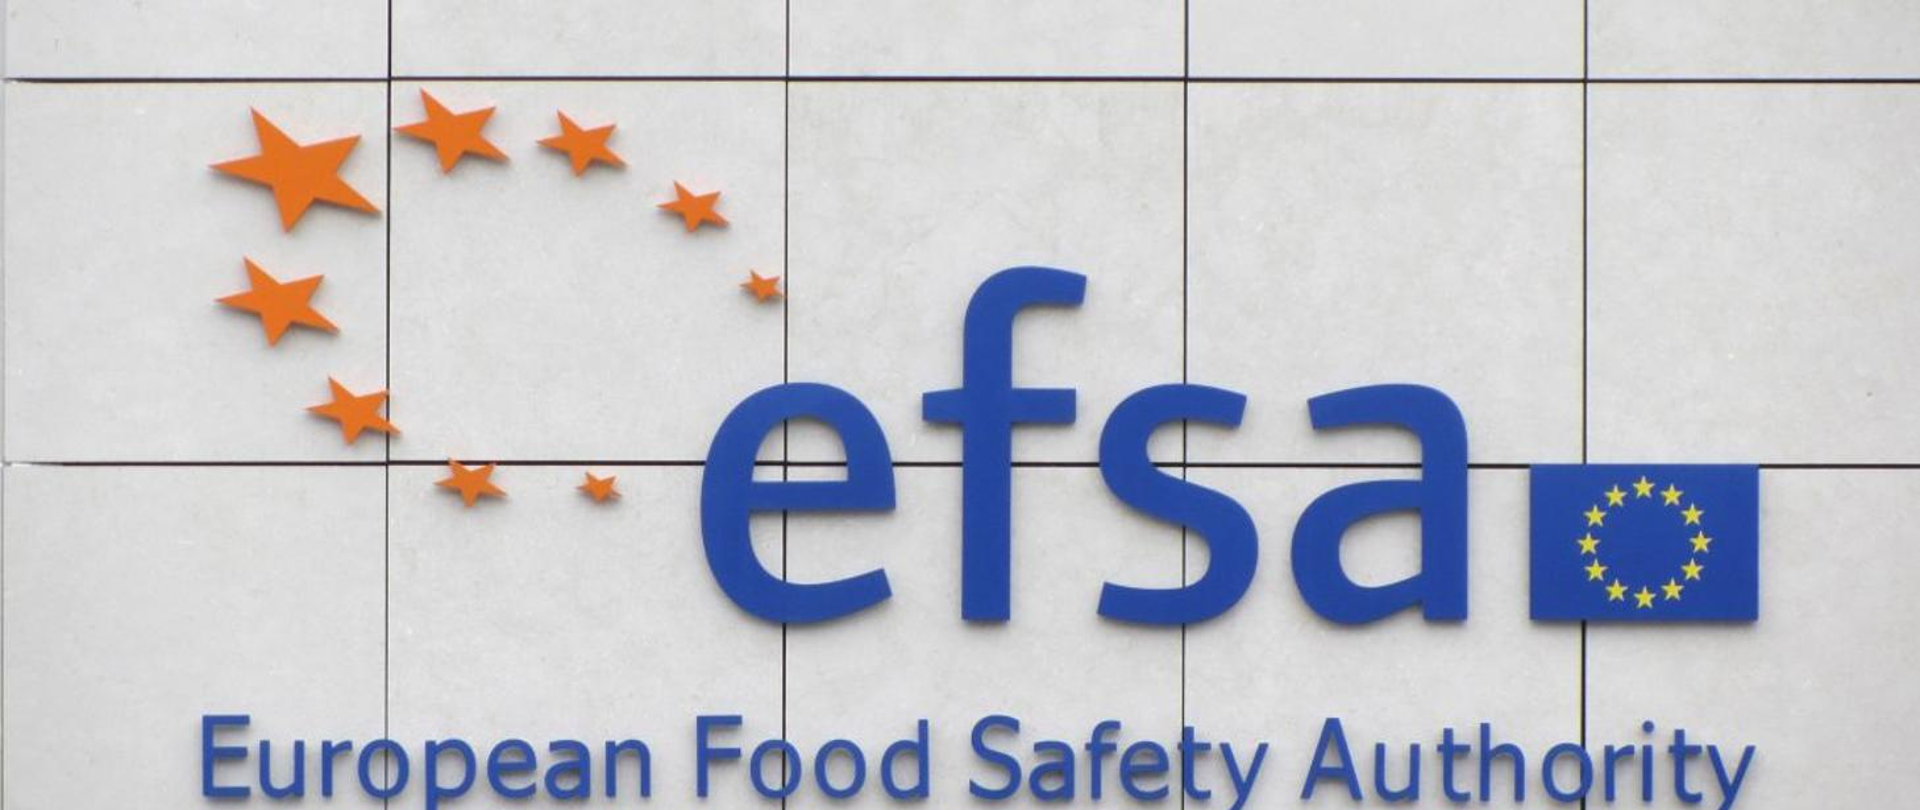 niebieski napis European Food Safety Authority